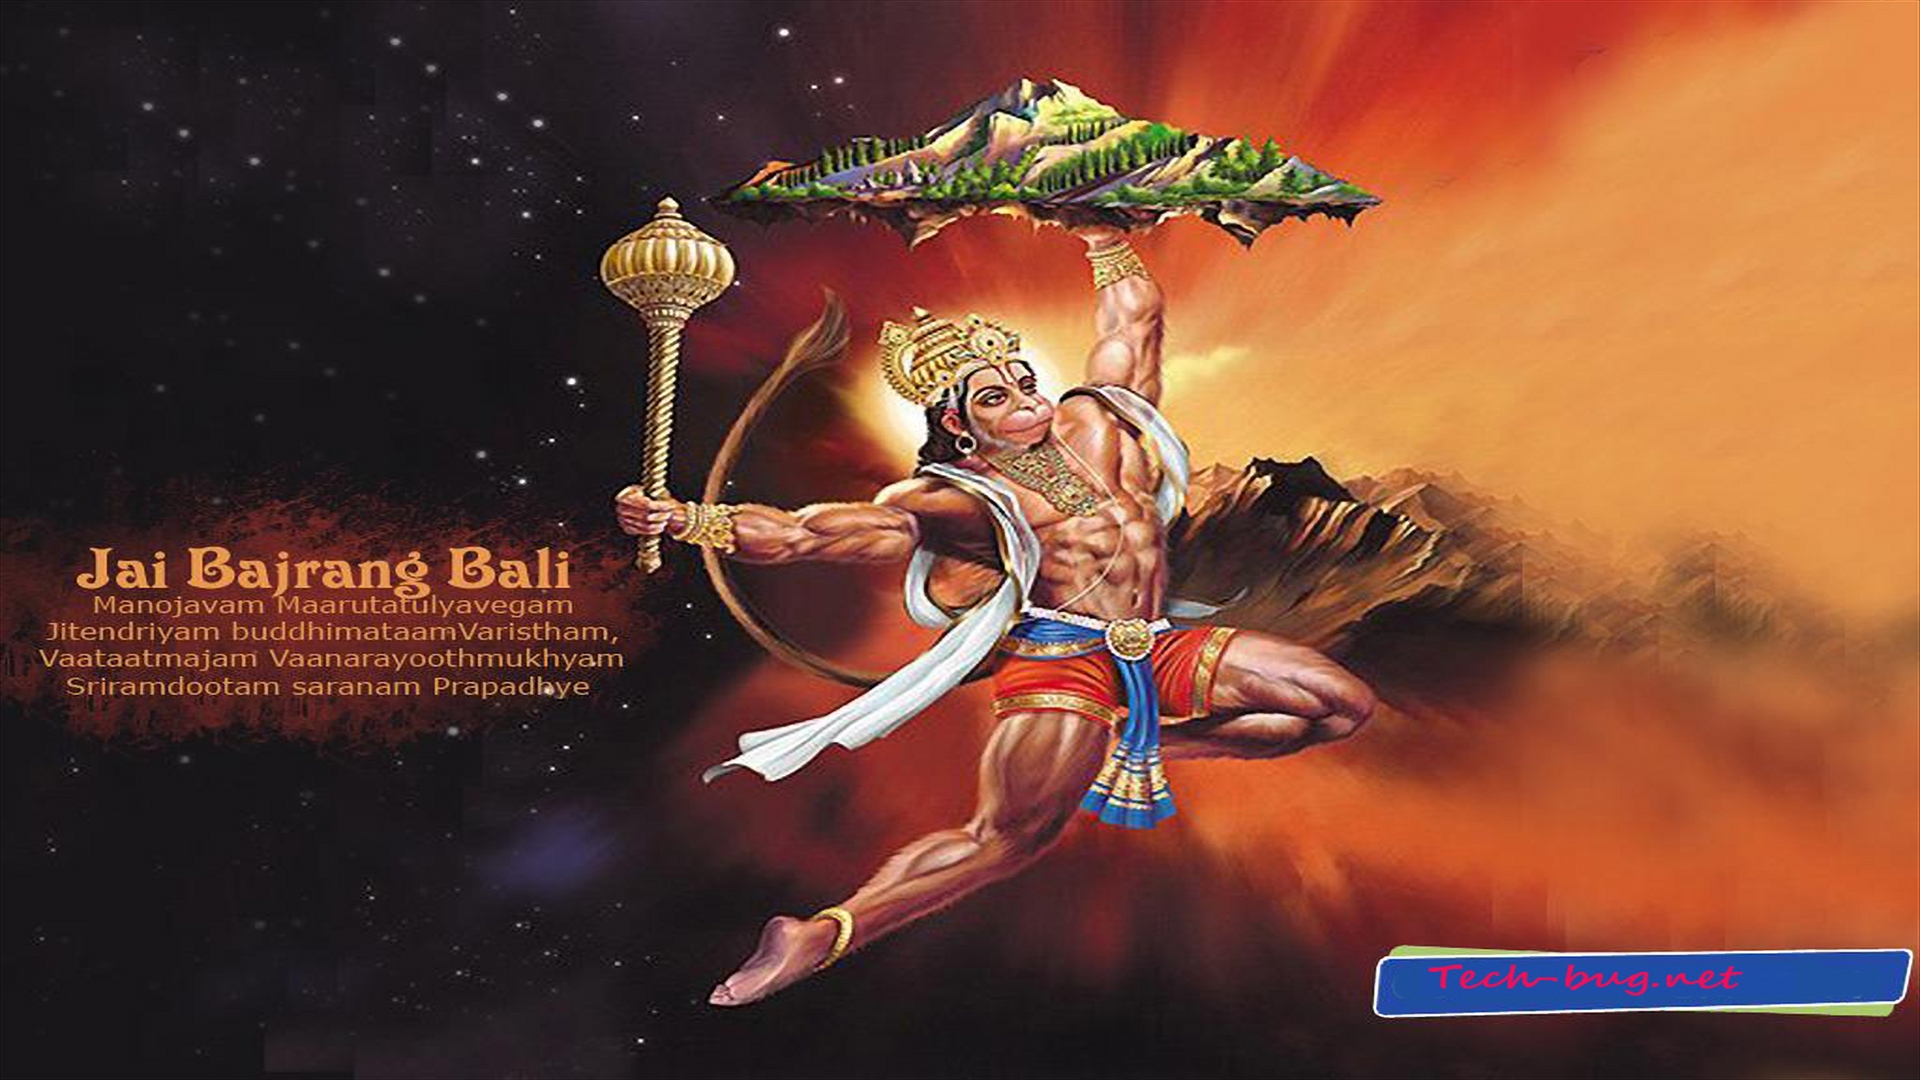 Shri Hanuman 3D animation full movie online